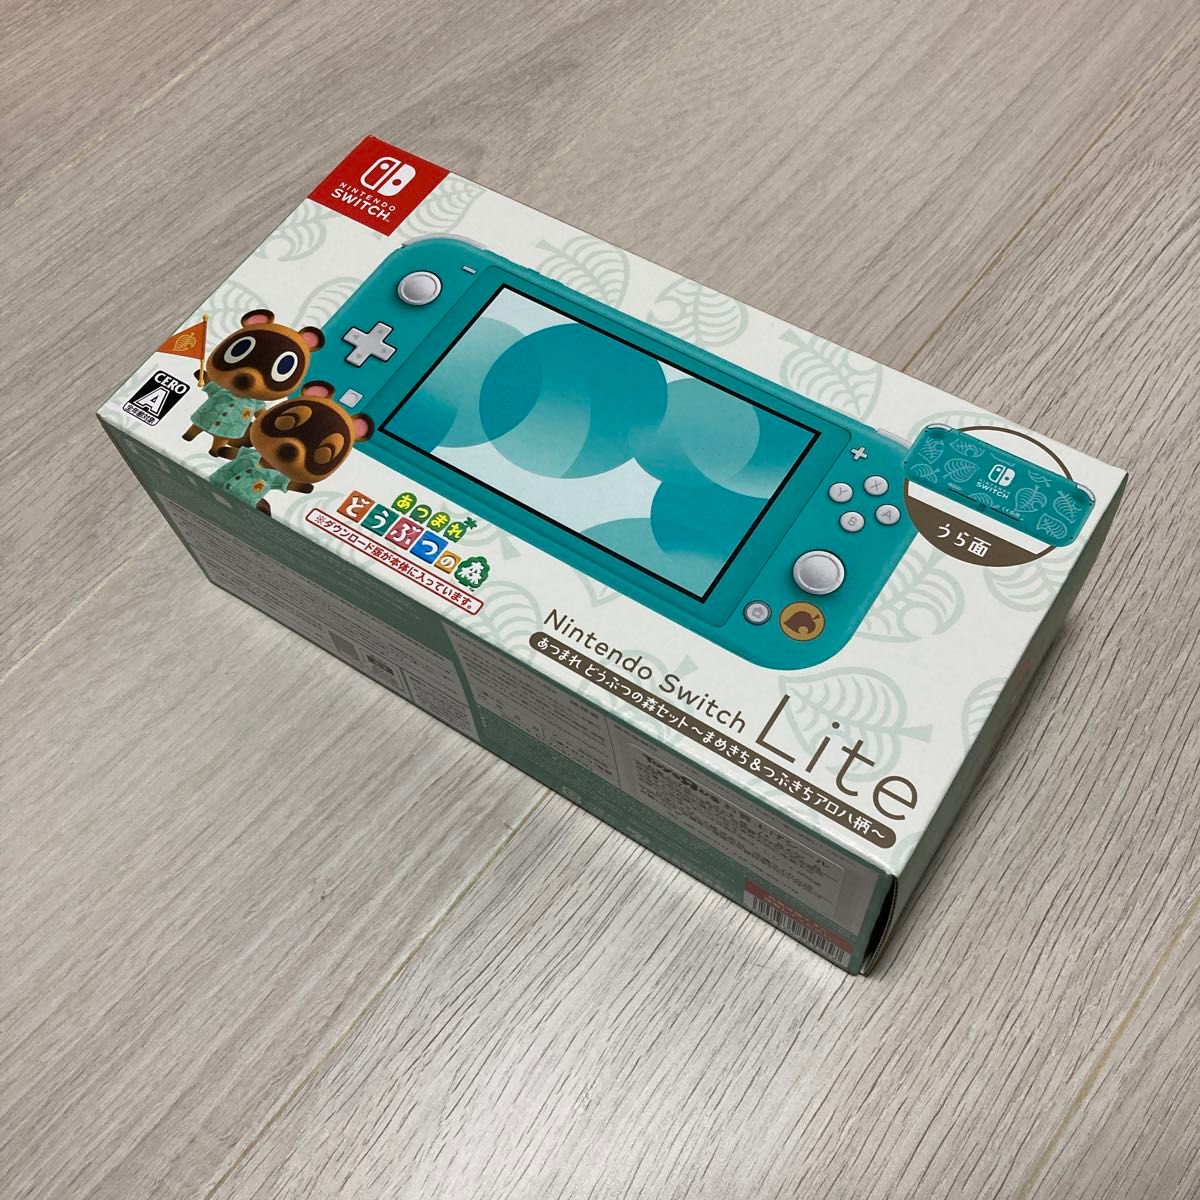 Nintendo Switch Lite あつまれどうぶつの森セット まめきち&つぶきち